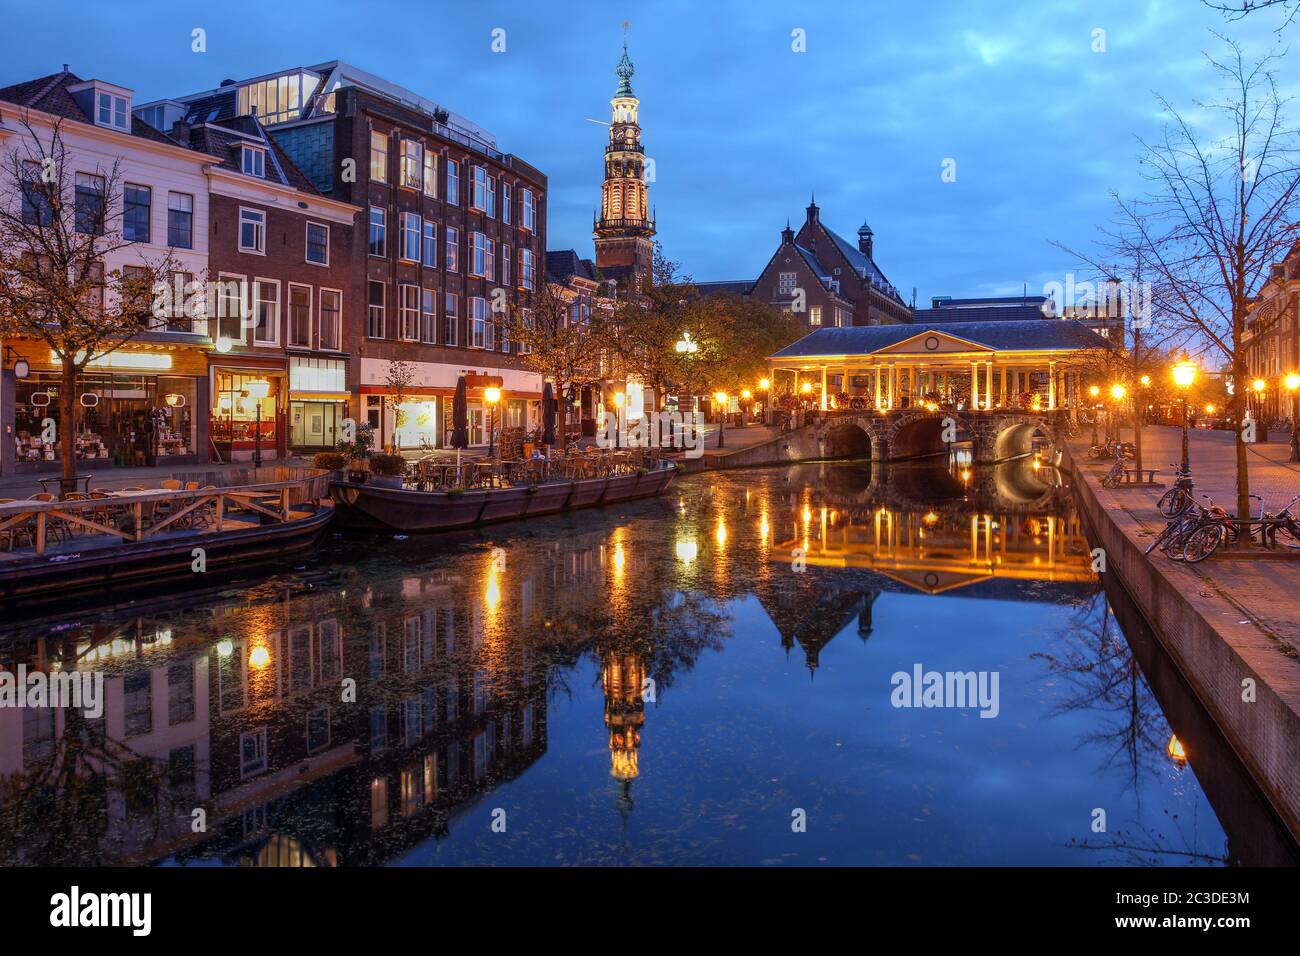 Escena nocturna en Leiden, Holanda con el puente Korenbeursbrug y el Ayuntamiento (Stadhuis). Foto de stock